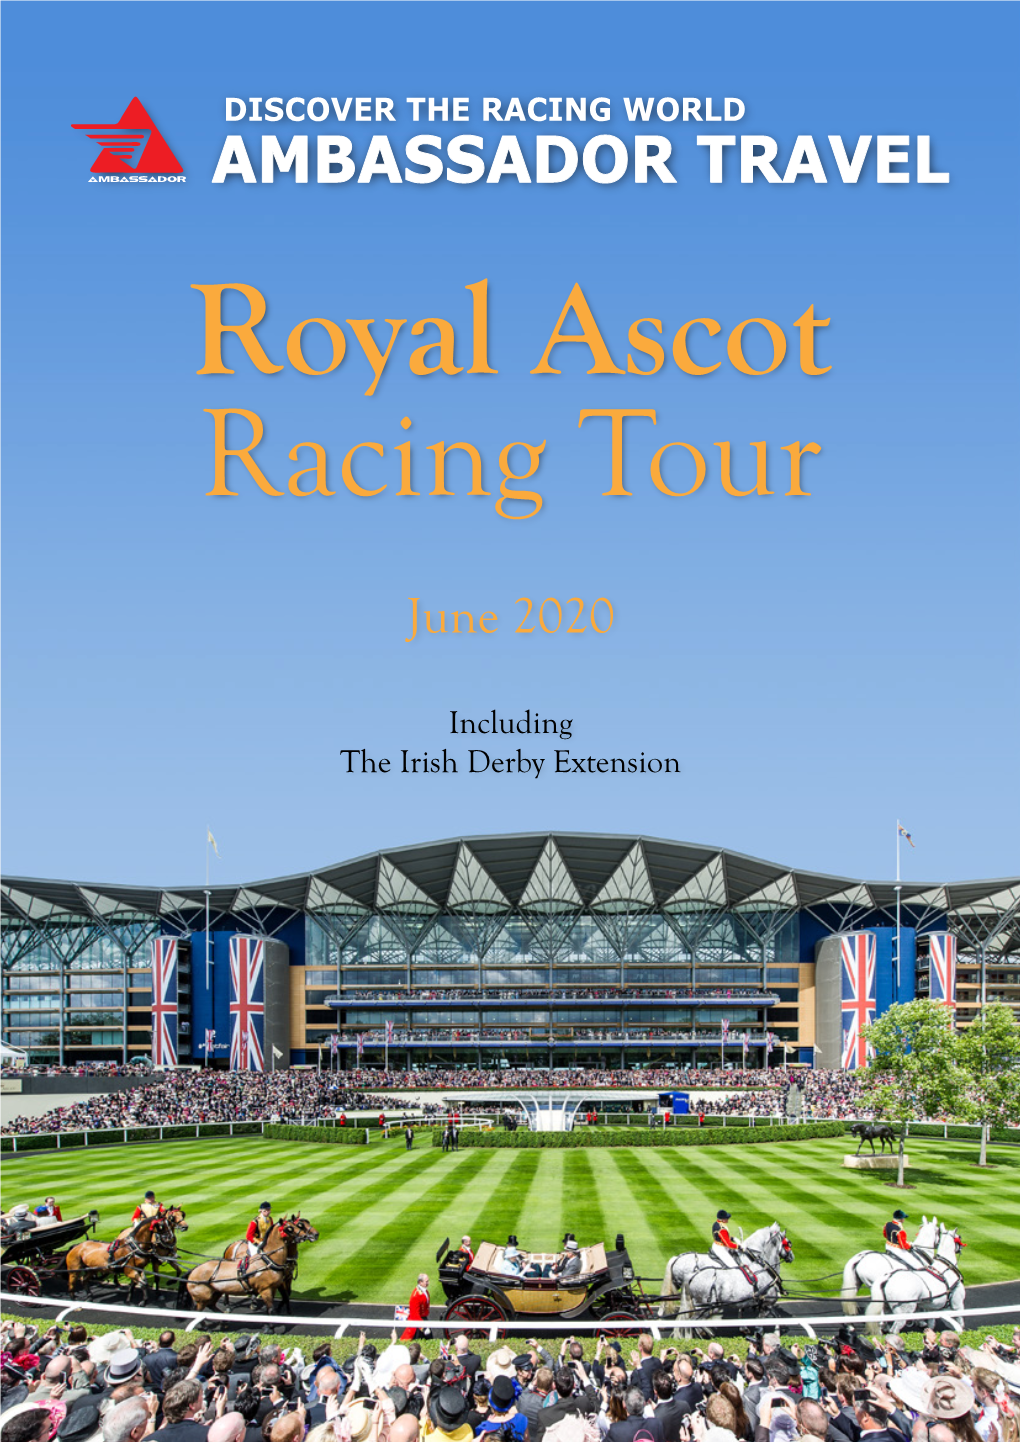 Royal Ascot Racing Tour